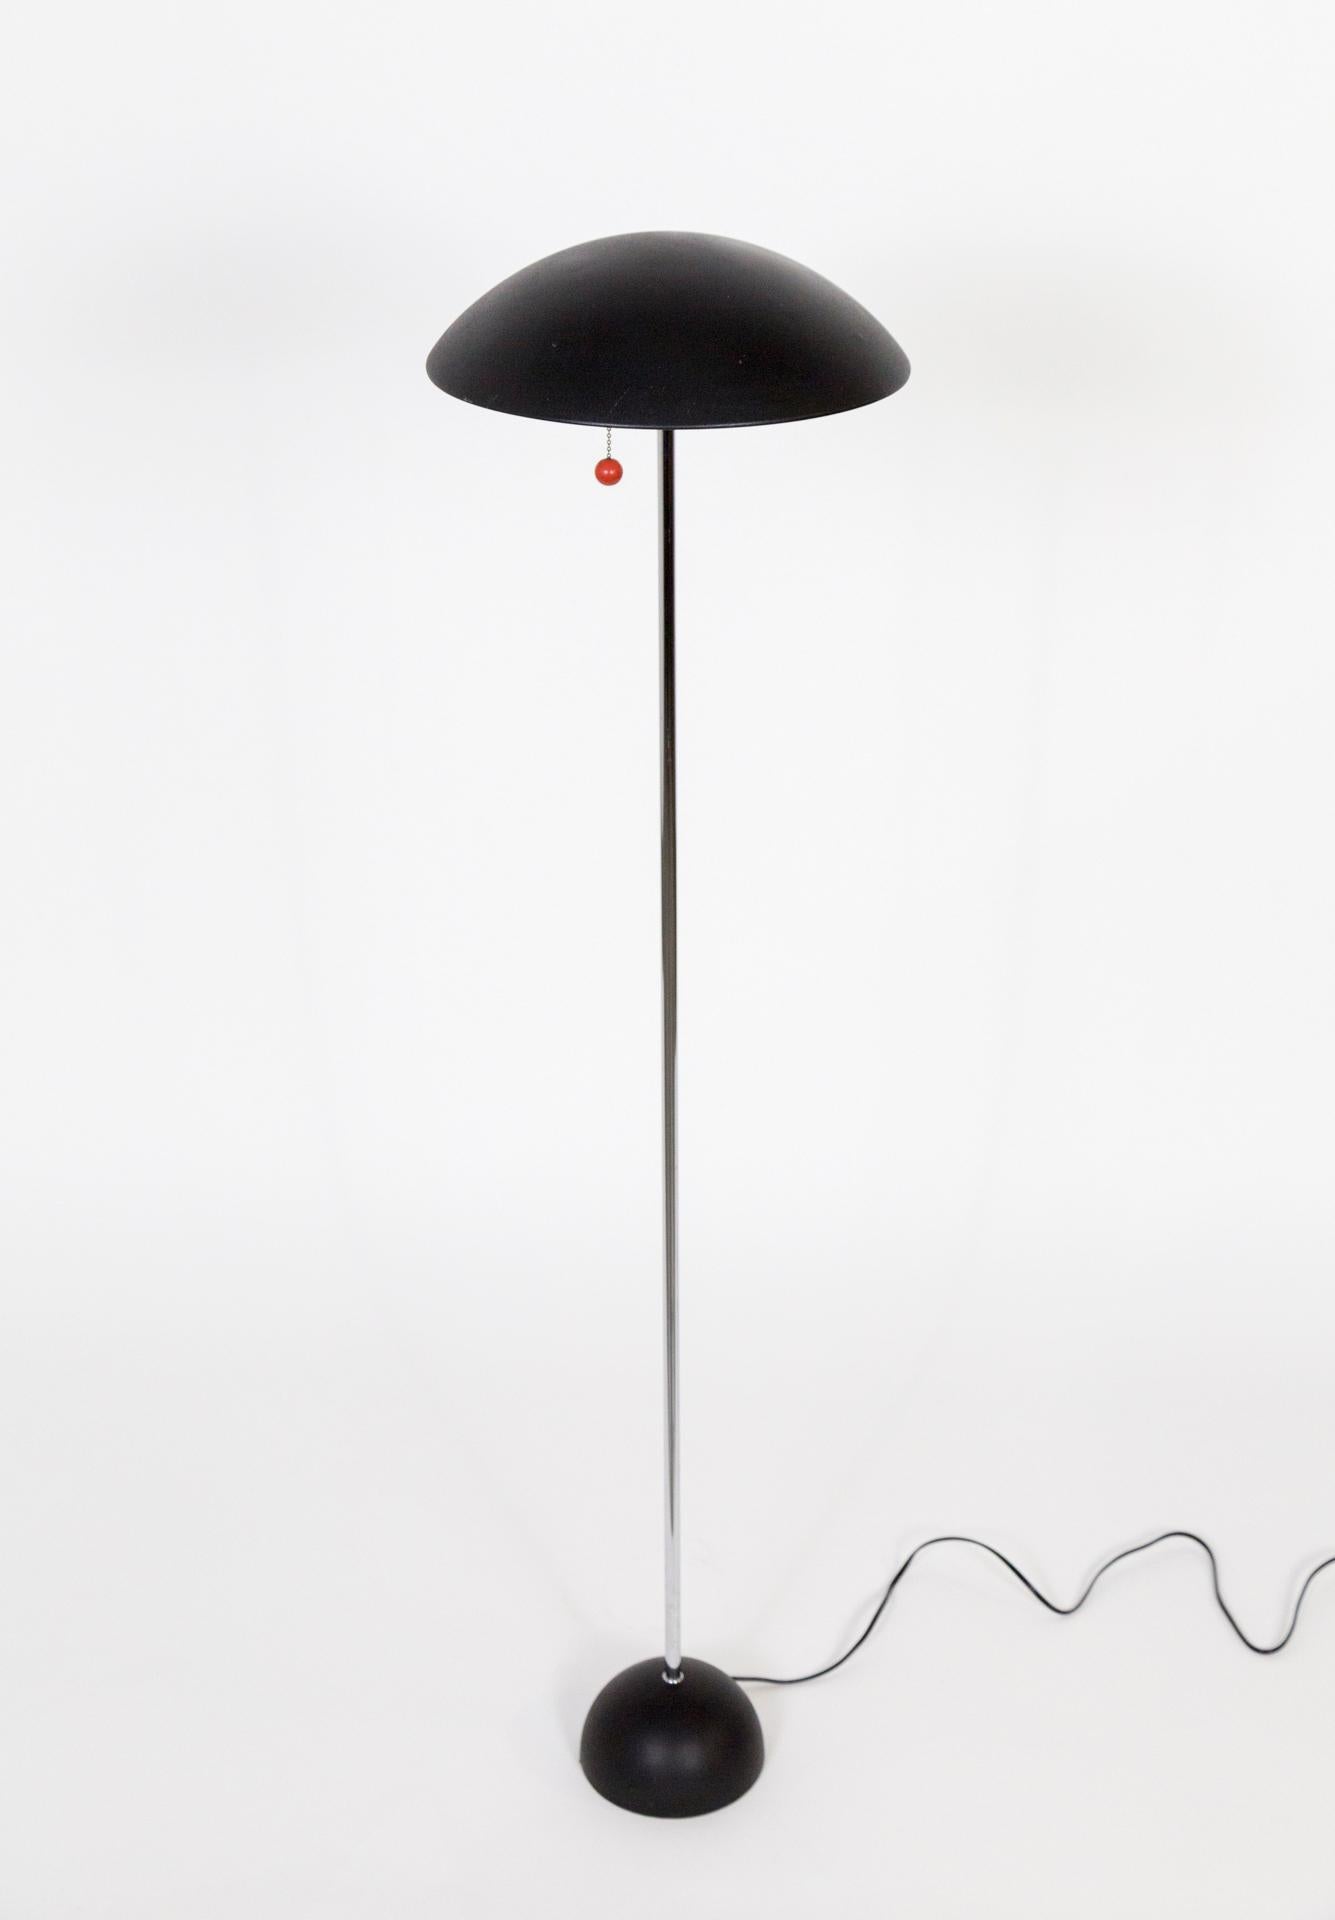 Stehlampe aus der Mitte des Jahrhunderts mit Downlight und schwarzem Metallschirm und Zugkette mit rotem Kugeldetail.  Sie hat einen schlanken, verchromten Stiel und einen ausgeprägten, schwarzen Kuppelsockel.  Er ist perfekt neben einem